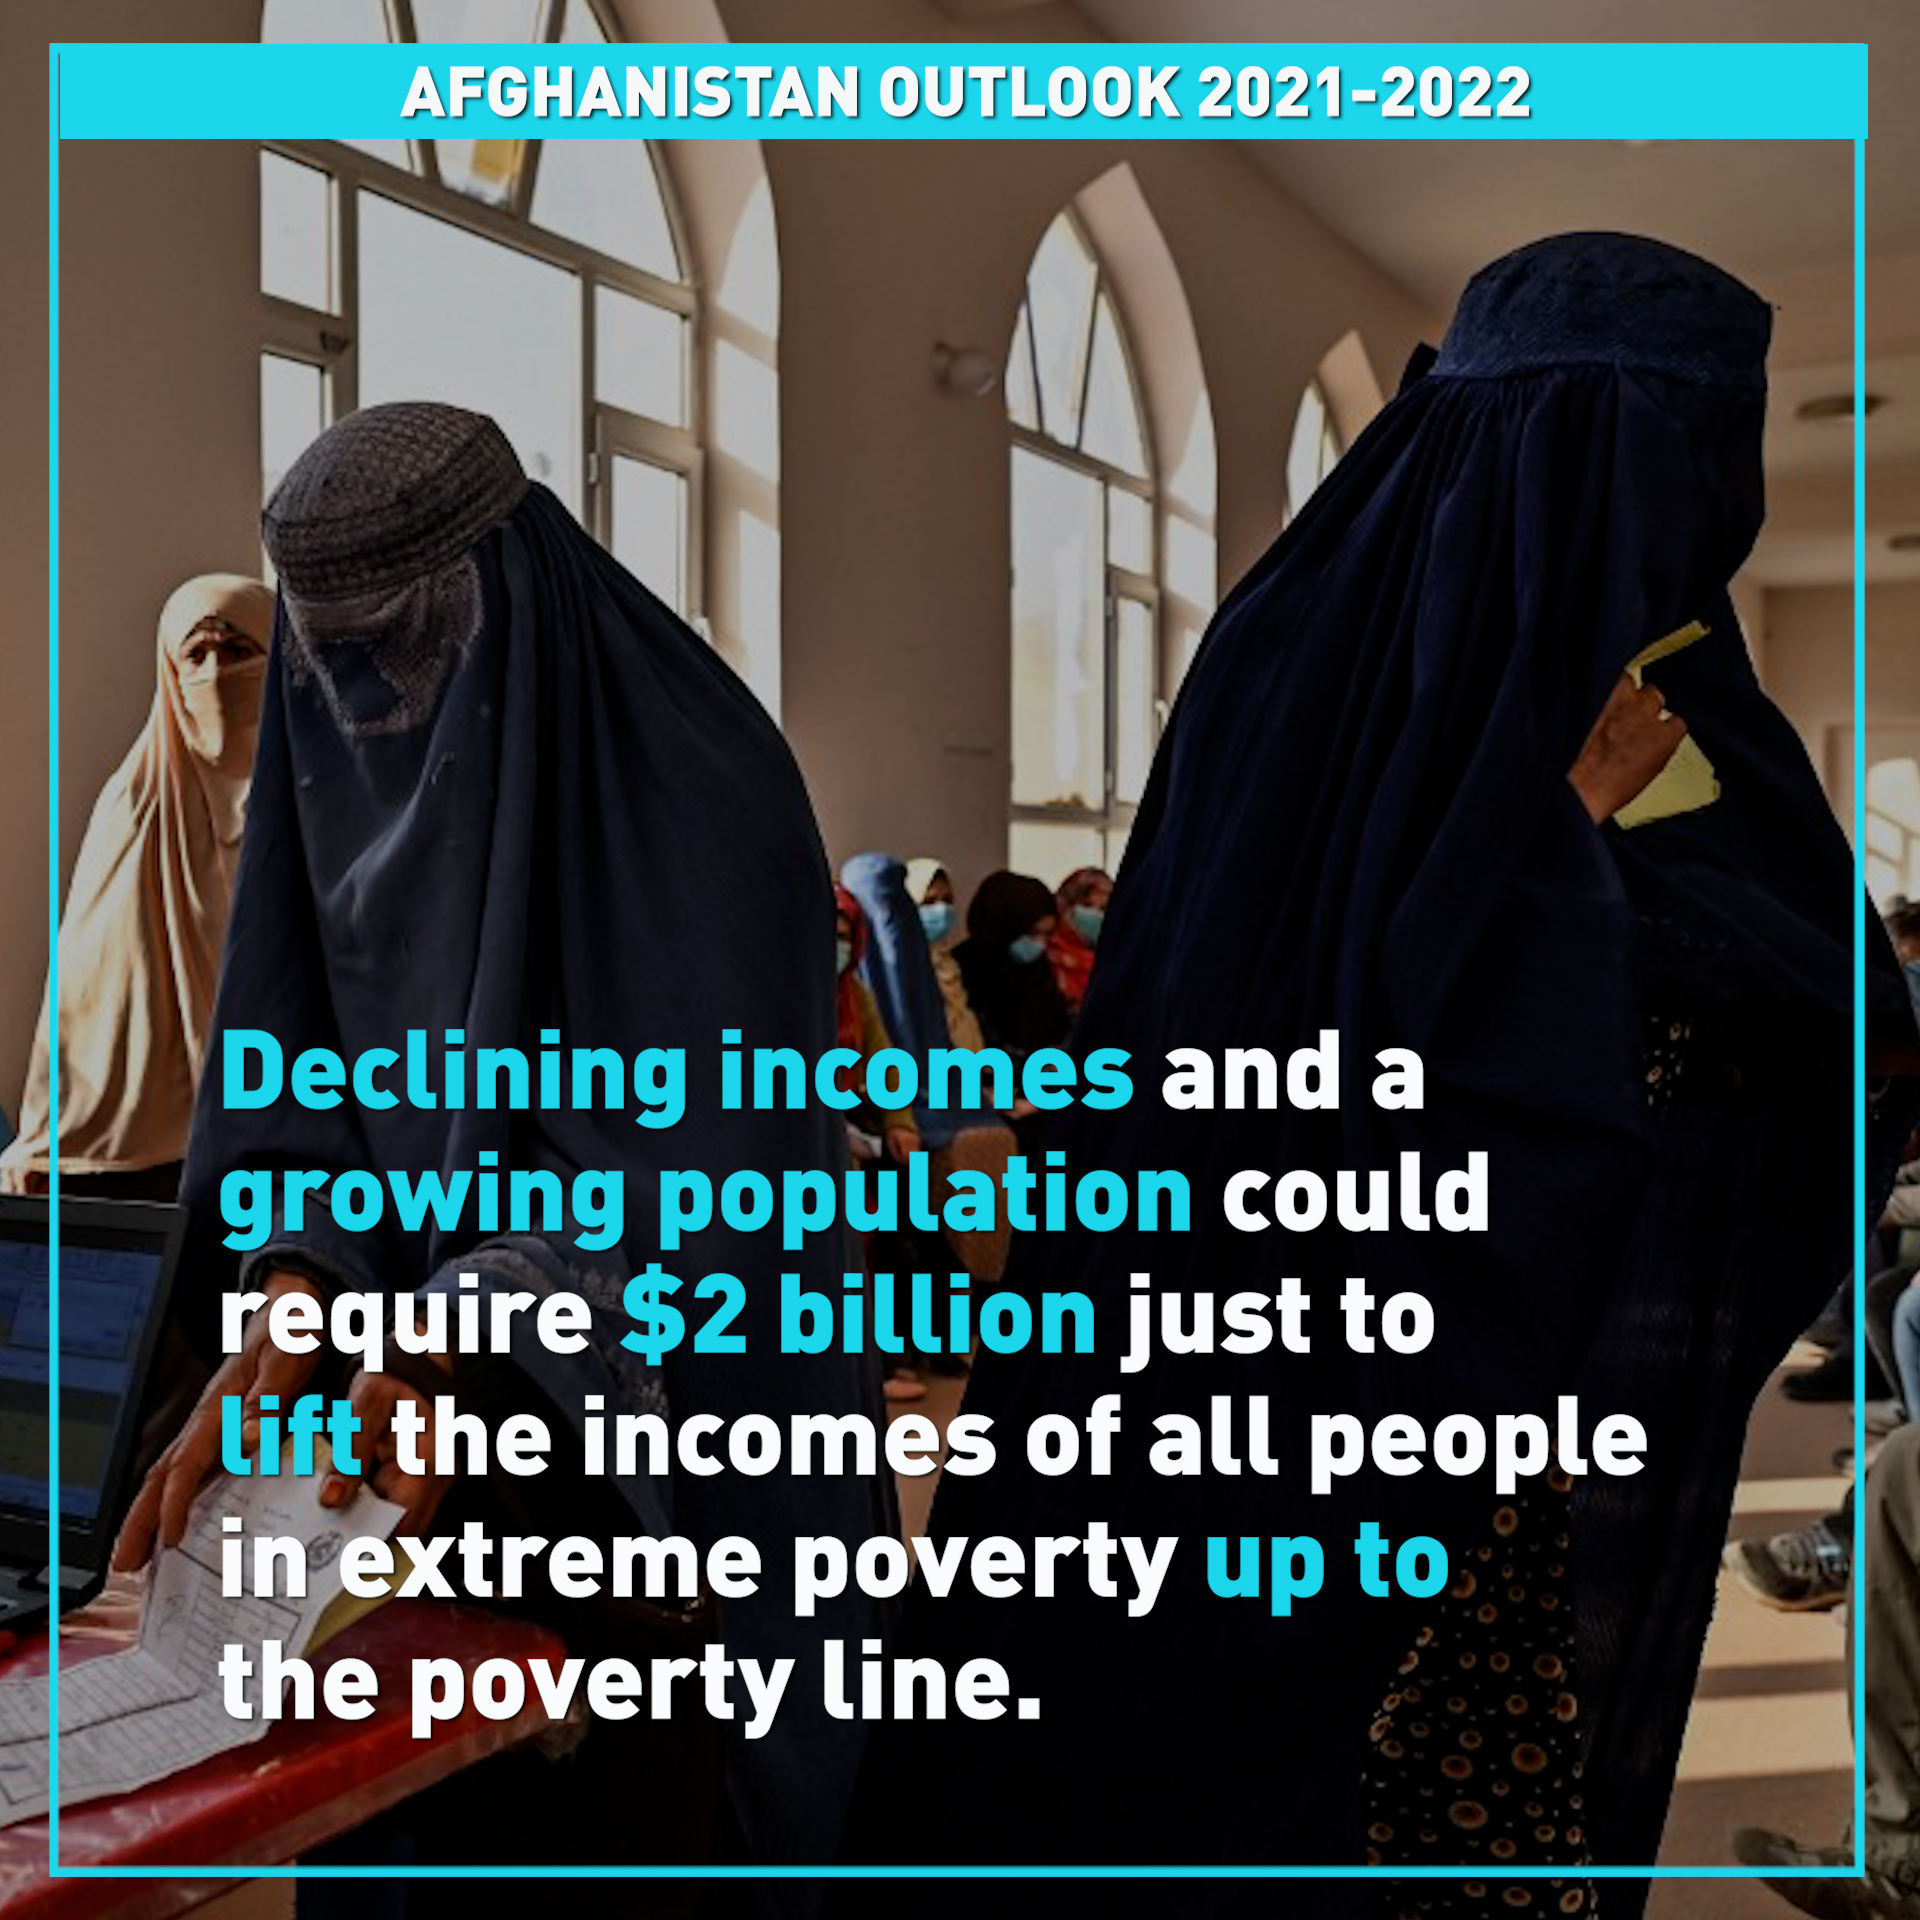 UNDP releases new report Afghanistan SocioEconomic Outlook 20212022